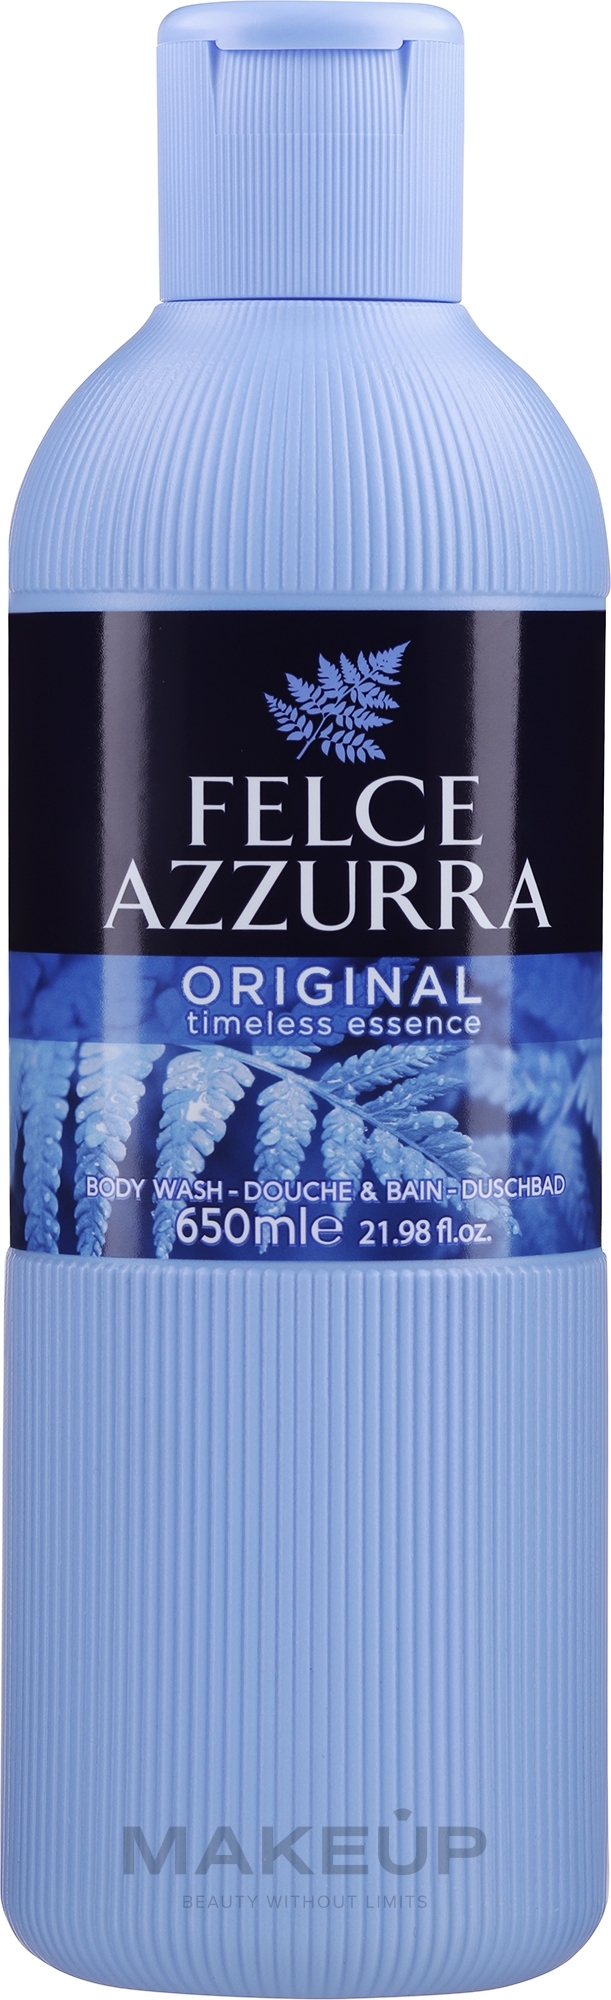 Bade- und Duschgel Classico - Paglieri Felce Azzurra Shower Gel And Bath Foam — Bild 650 ml